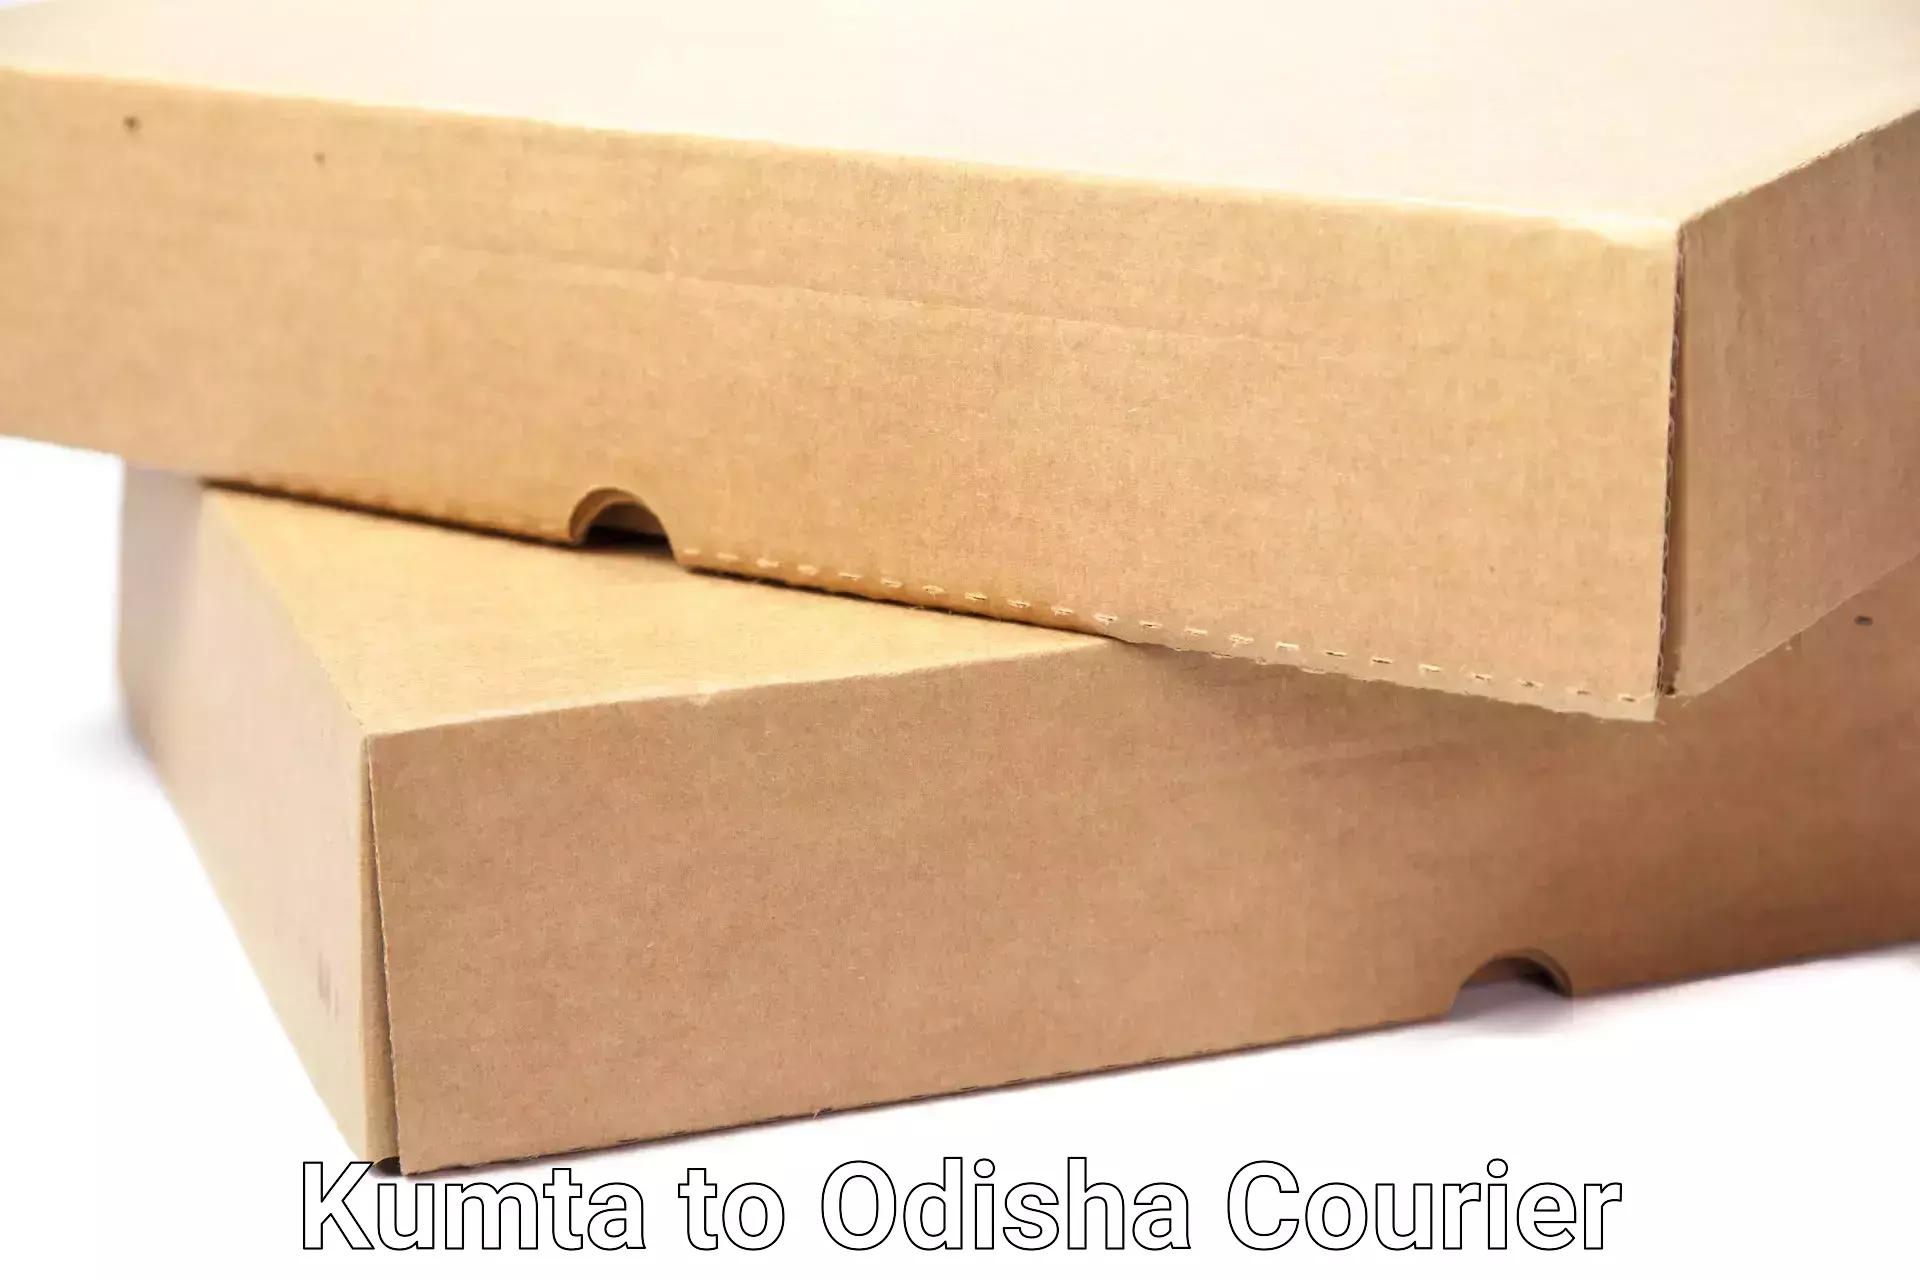 Furniture transport professionals Kumta to Ukhunda